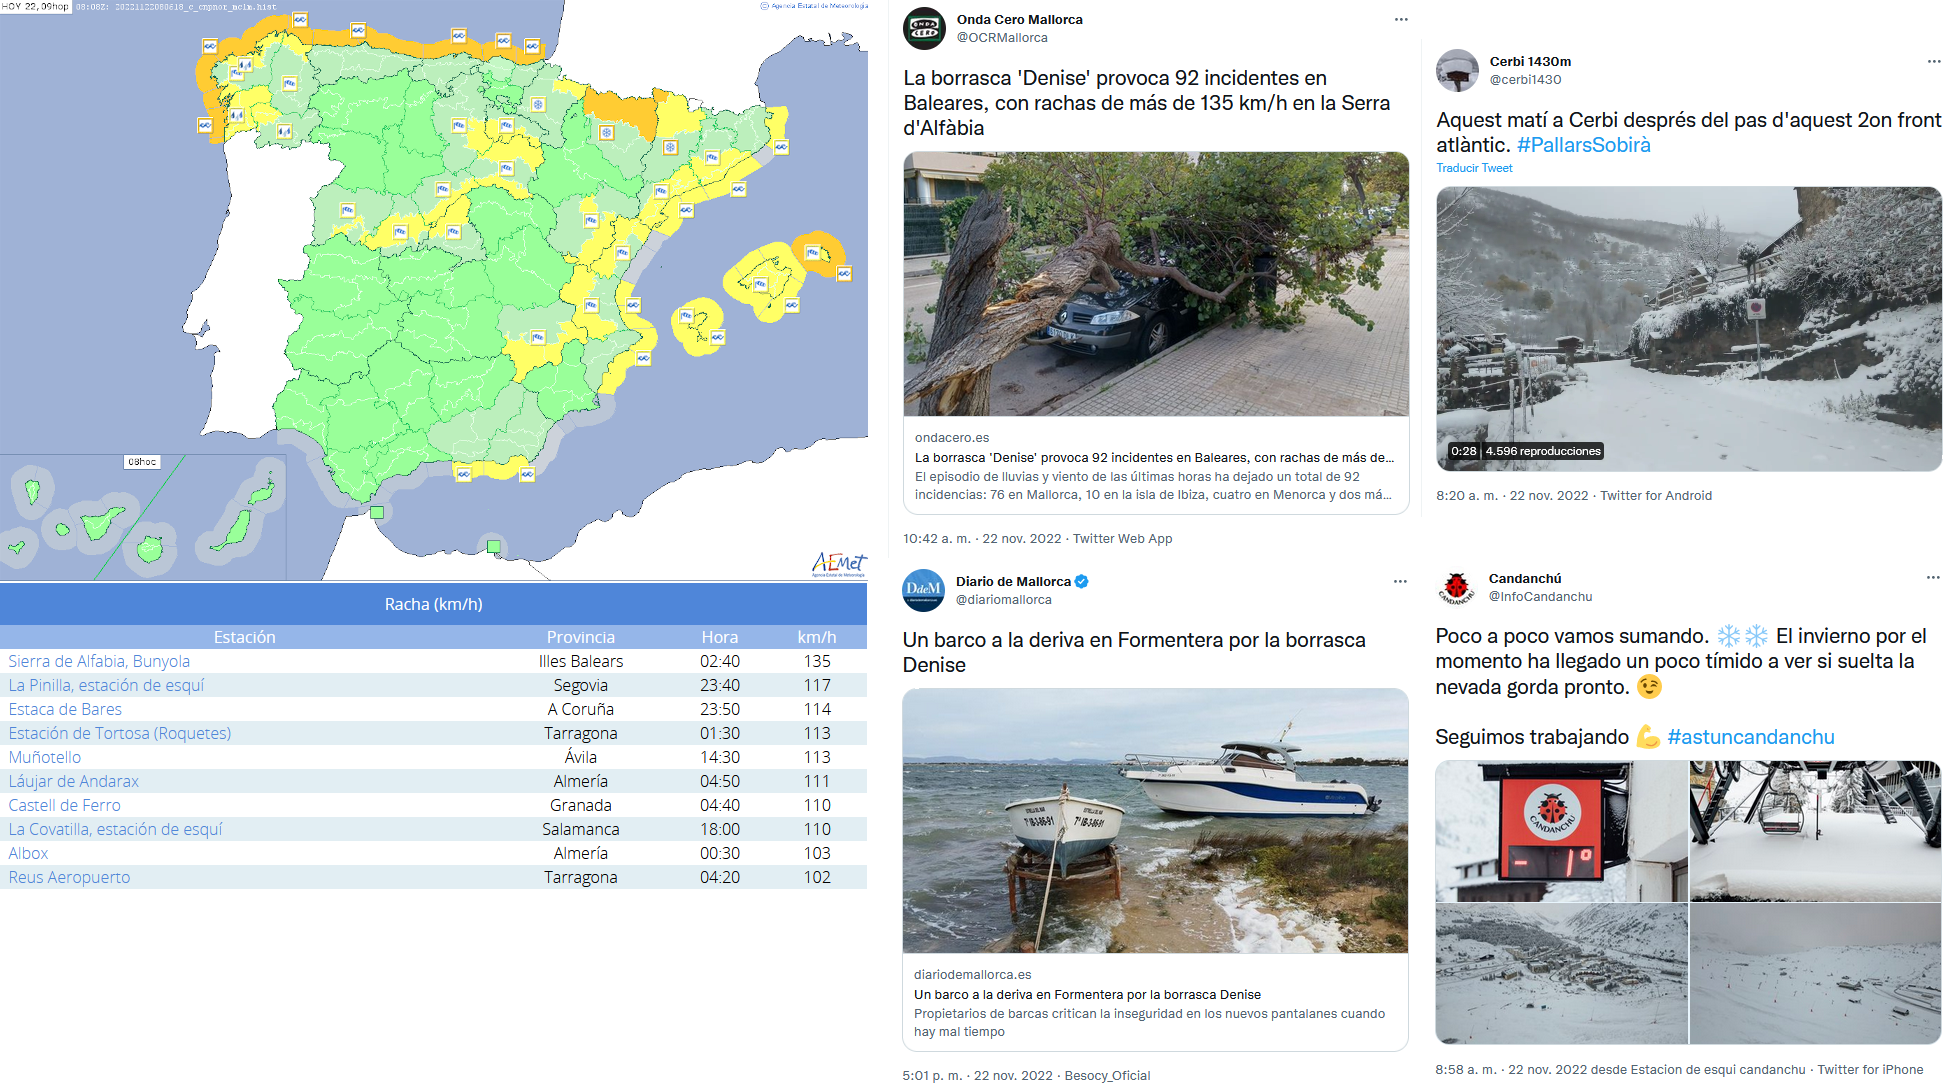 Avisos emitidos, principales registros de rachas maximas observadas en 24 horas en estaciones de AEMET a lo largo del día 22 de noviembre y algunos tuits que reflejan algunos de los impactos provocados por la borrasca.